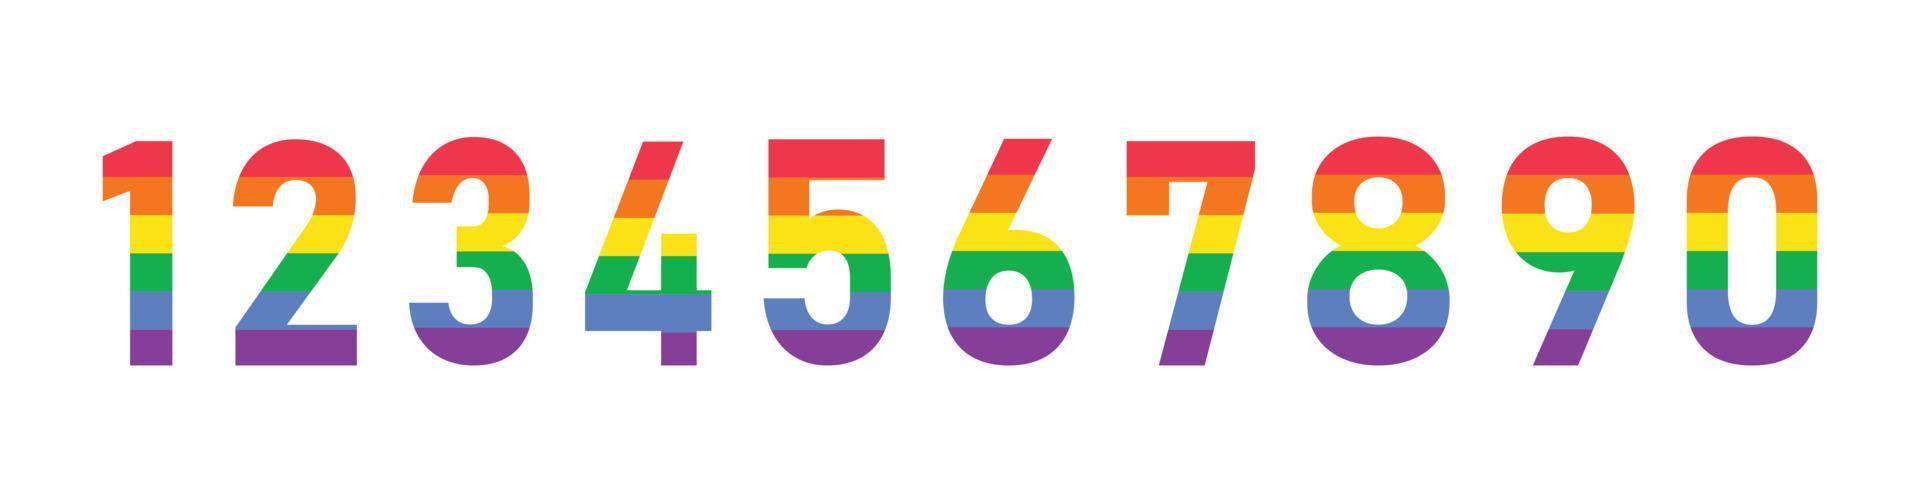 siffror från 1 till 10 med ljusa regnbågsfärger. LGbt pride flagga siffror samling med färgglada linjer. vektor clipart för design isolerad på vit bakgrund.